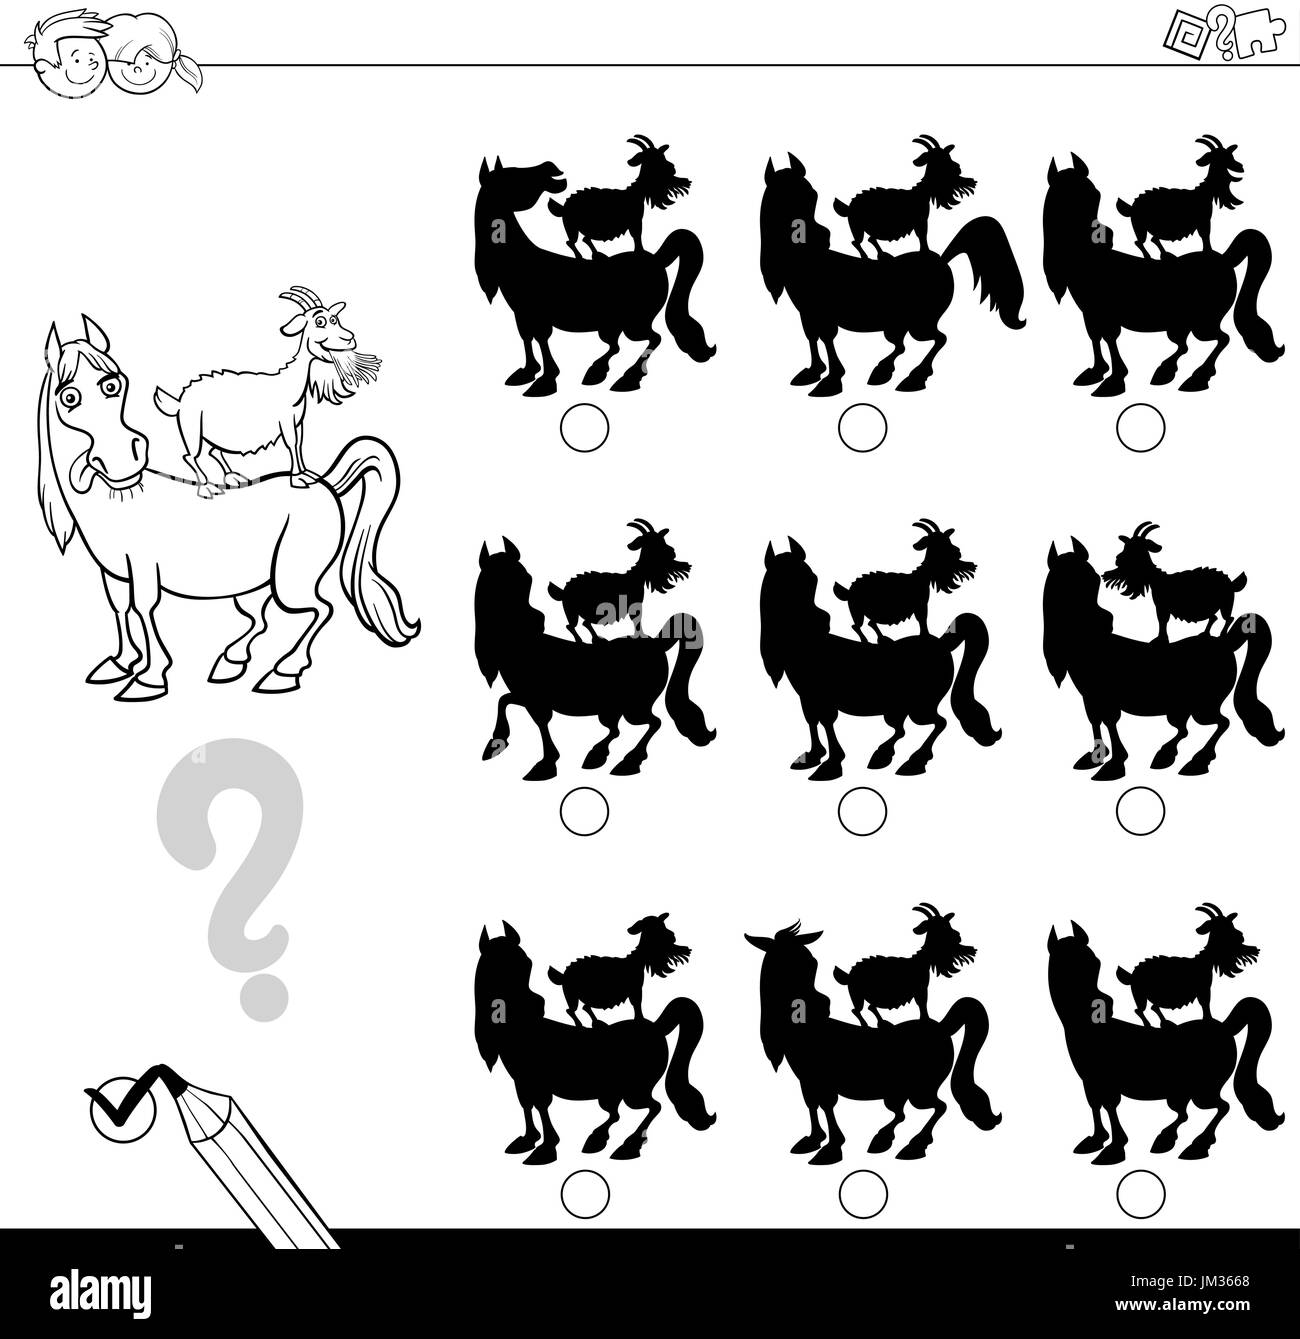 Cartoon noir et blanc Illustration de la recherche de l'ombre sans différences activité éducative pour les enfants avec des animaux d'élevage de chevaux et de chèvres. Illustration de Vecteur